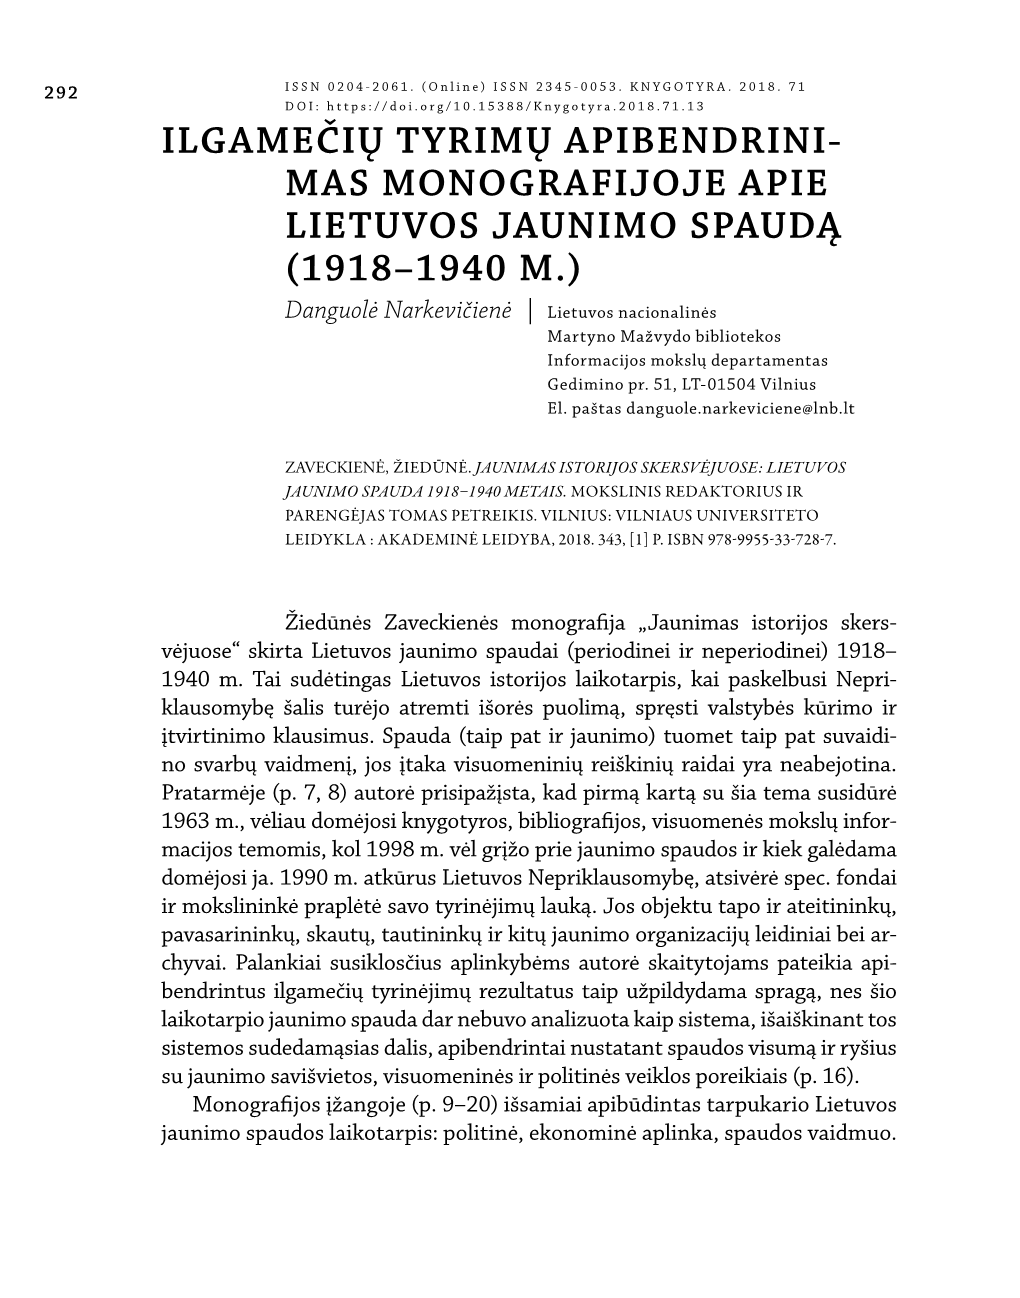 Monografijoje Apie Lietuvos Jaunimo Spaudą